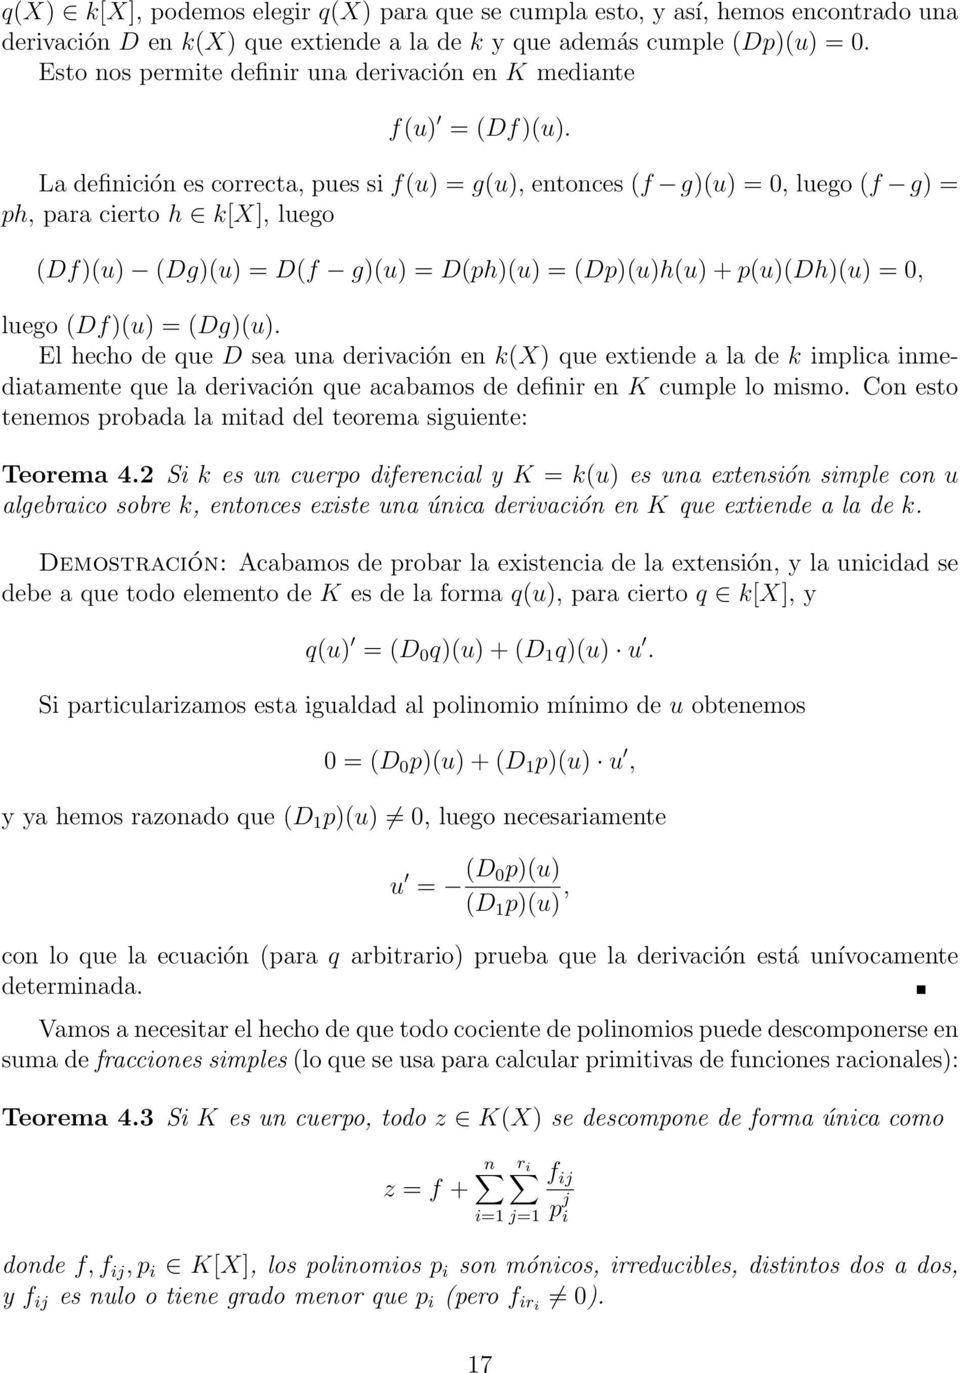 La definición es correcta, pues si f(u) = g(u), entonces (f g)(u) = 0, luego (f g) = ph, para cierto h k[x], luego (Df)(u) (Dg)(u) = D(f g)(u) = D(ph)(u) = (Dp)(u)h(u) + p(u)(dh)(u) = 0, luego